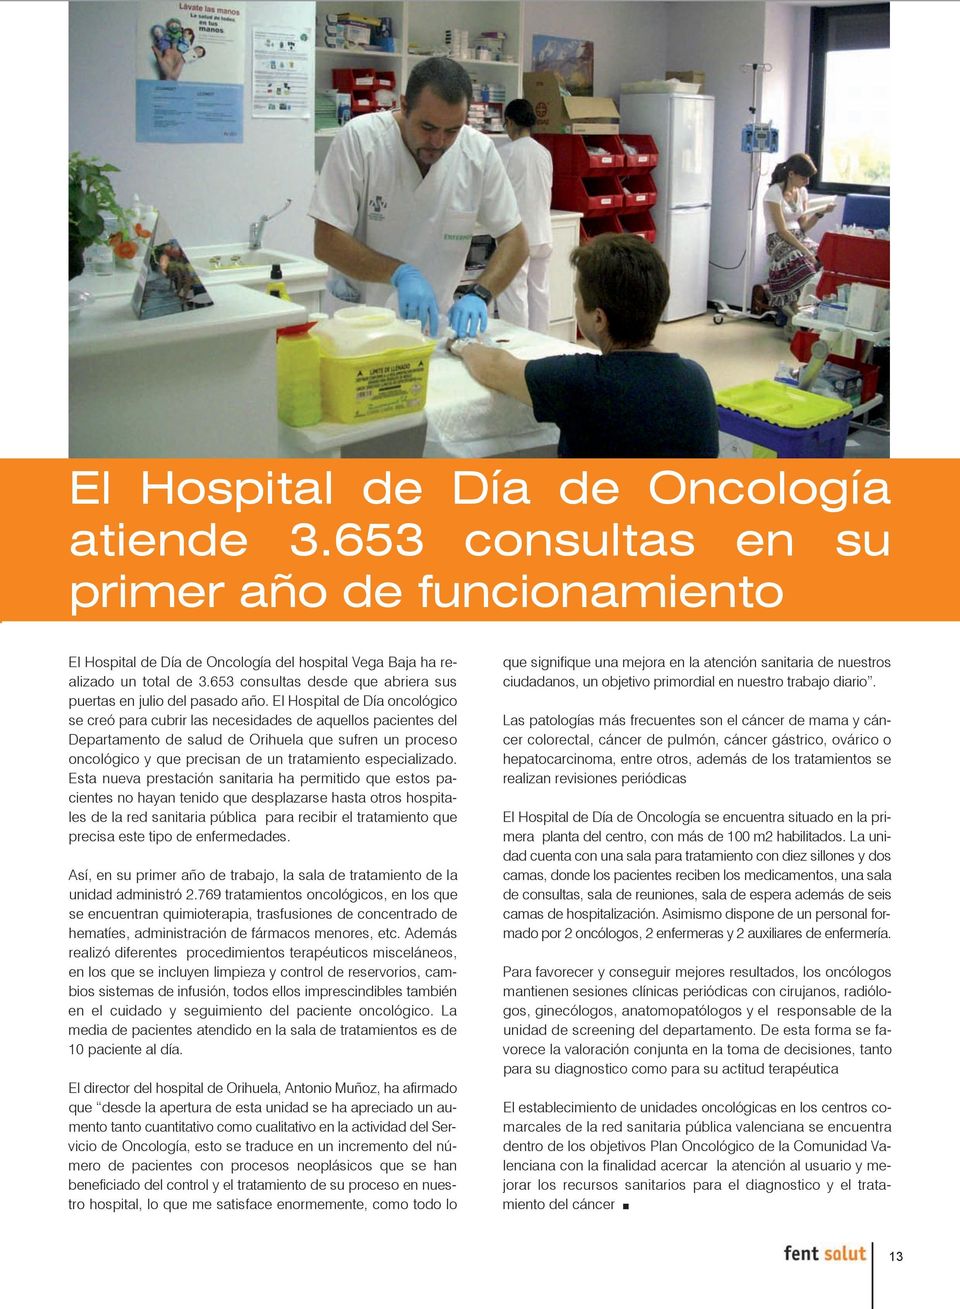 El Hospital de Día oncológico se creó para cubrir las necesidades de aquellos pacientes del Departamento de salud de Orihuela que sufren un proceso oncológico y que precisan de un tratamiento